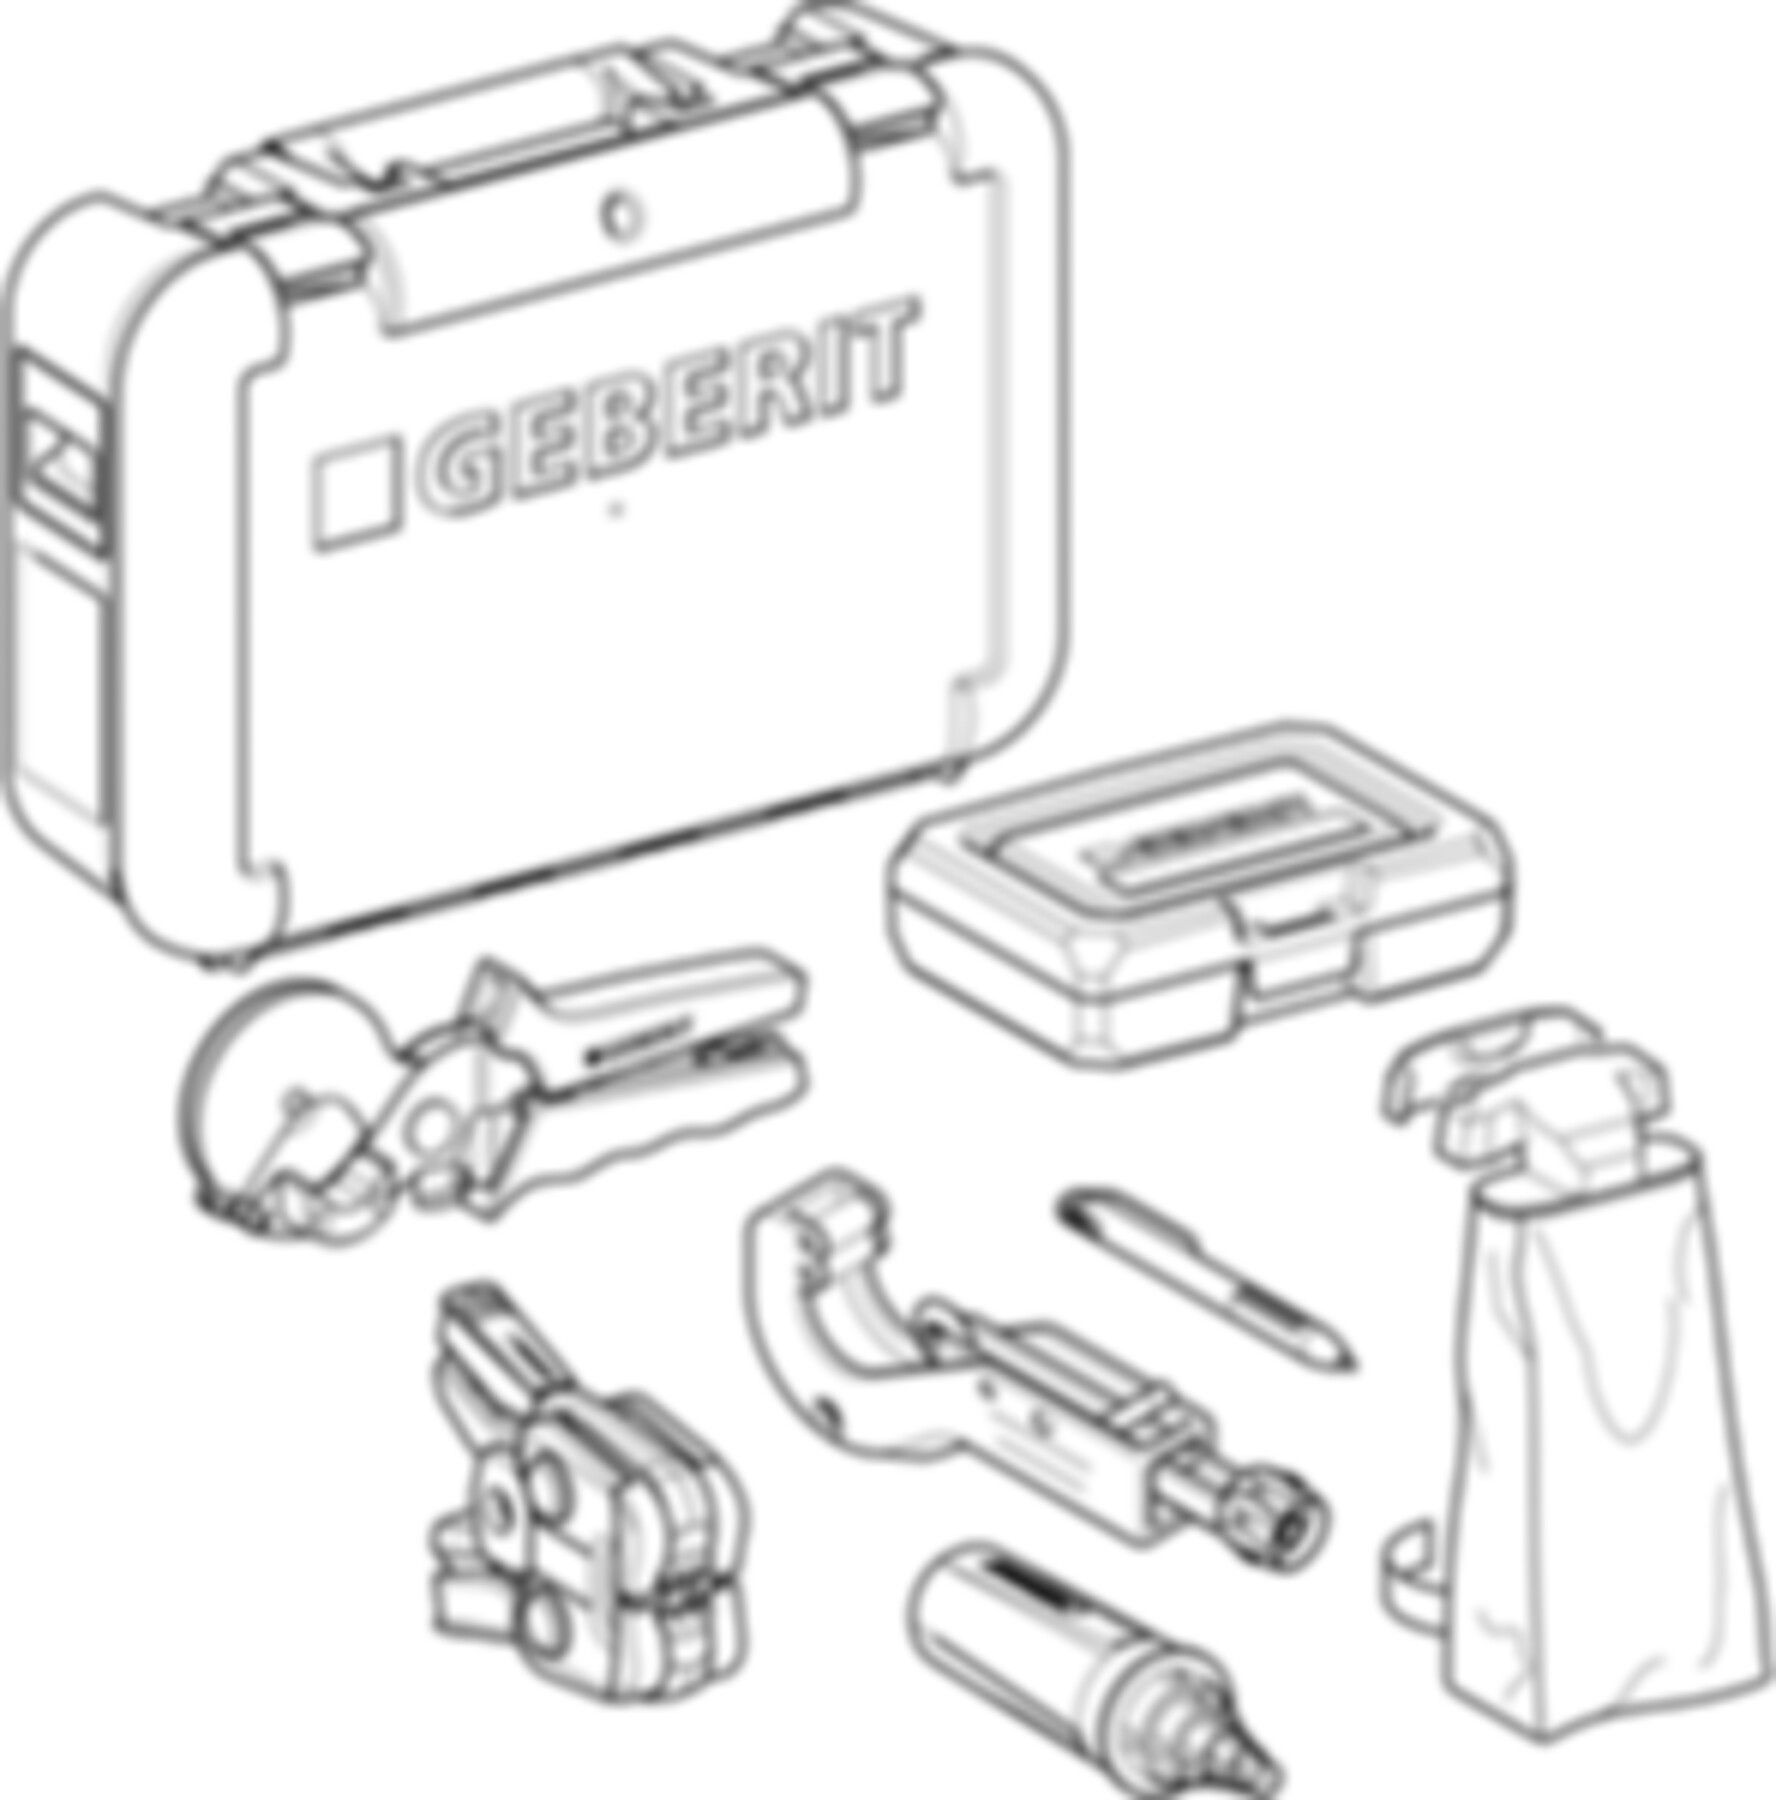 FlowFit Koffer bestückt (1) 16-40mm 655.078.00.1 - Geberit Werkzeuge und Zubehör